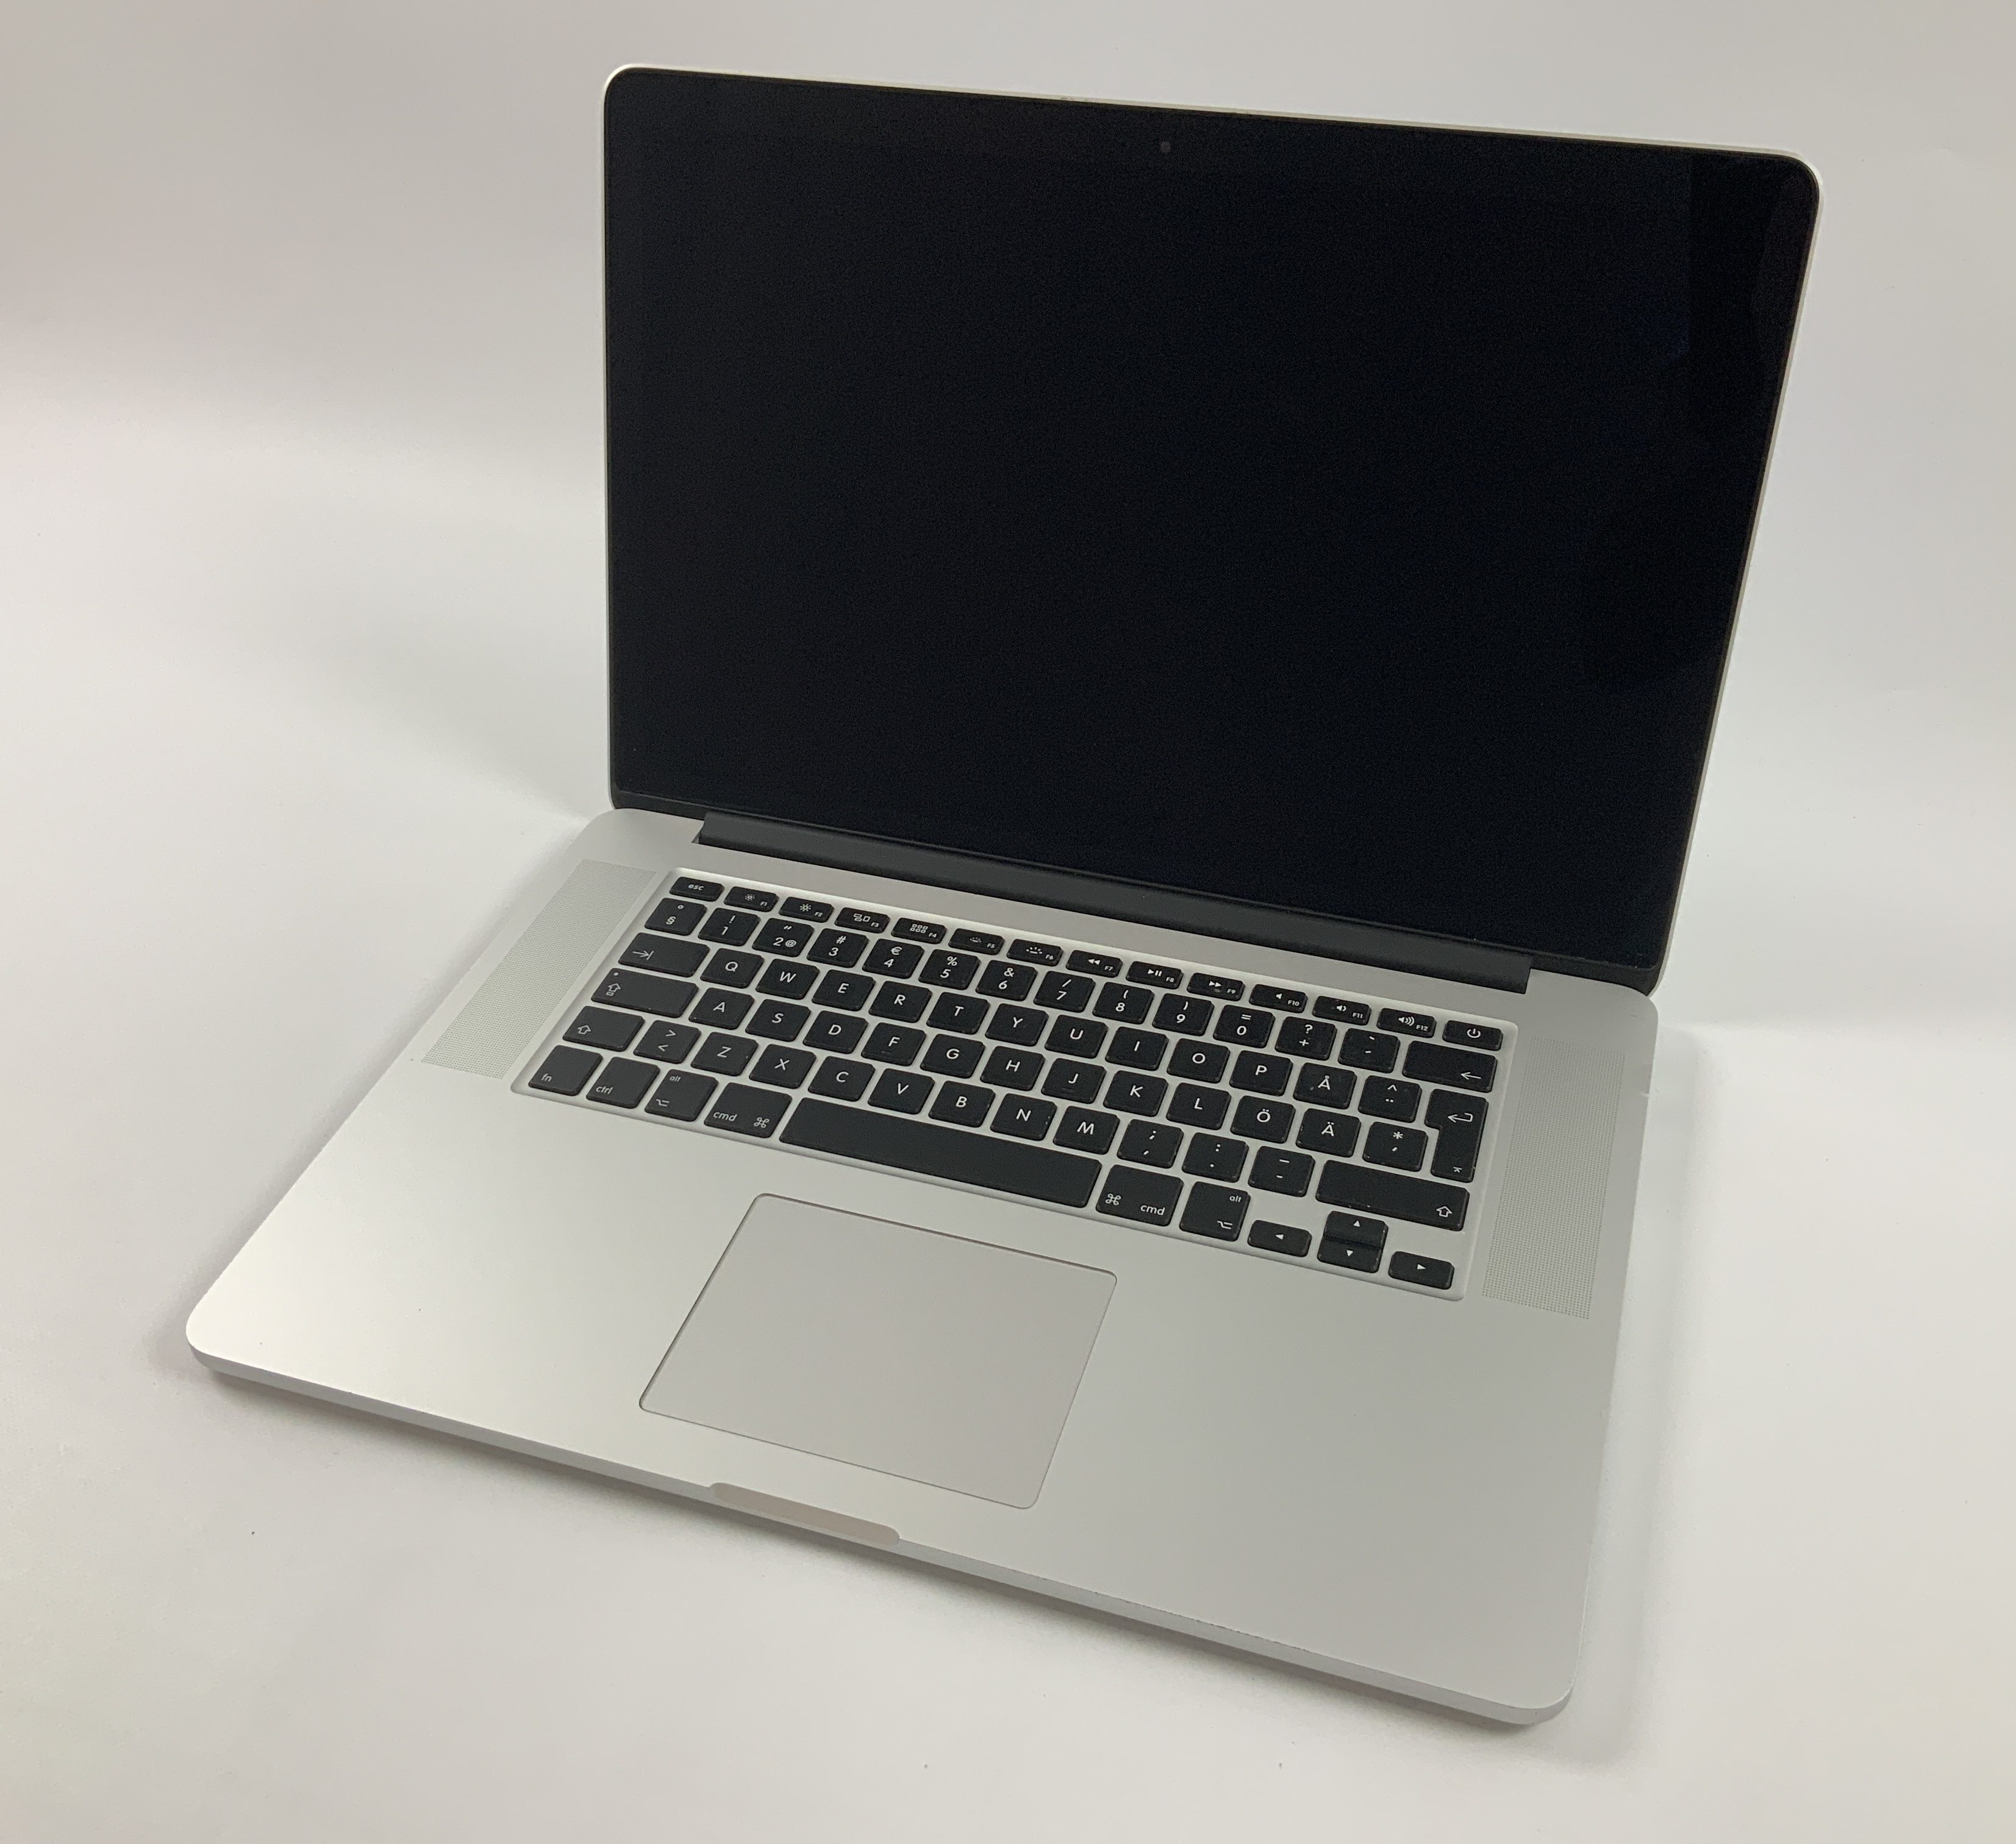 MacBook Pro Retina 15" Mid 2015 (Intel Quad-Core i7 2.2 GHz 16 GB RAM 256 GB SSD), Intel Quad-Core i7 2.2 GHz, 16 GB RAM, 256 GB SSD, Afbeelding 1